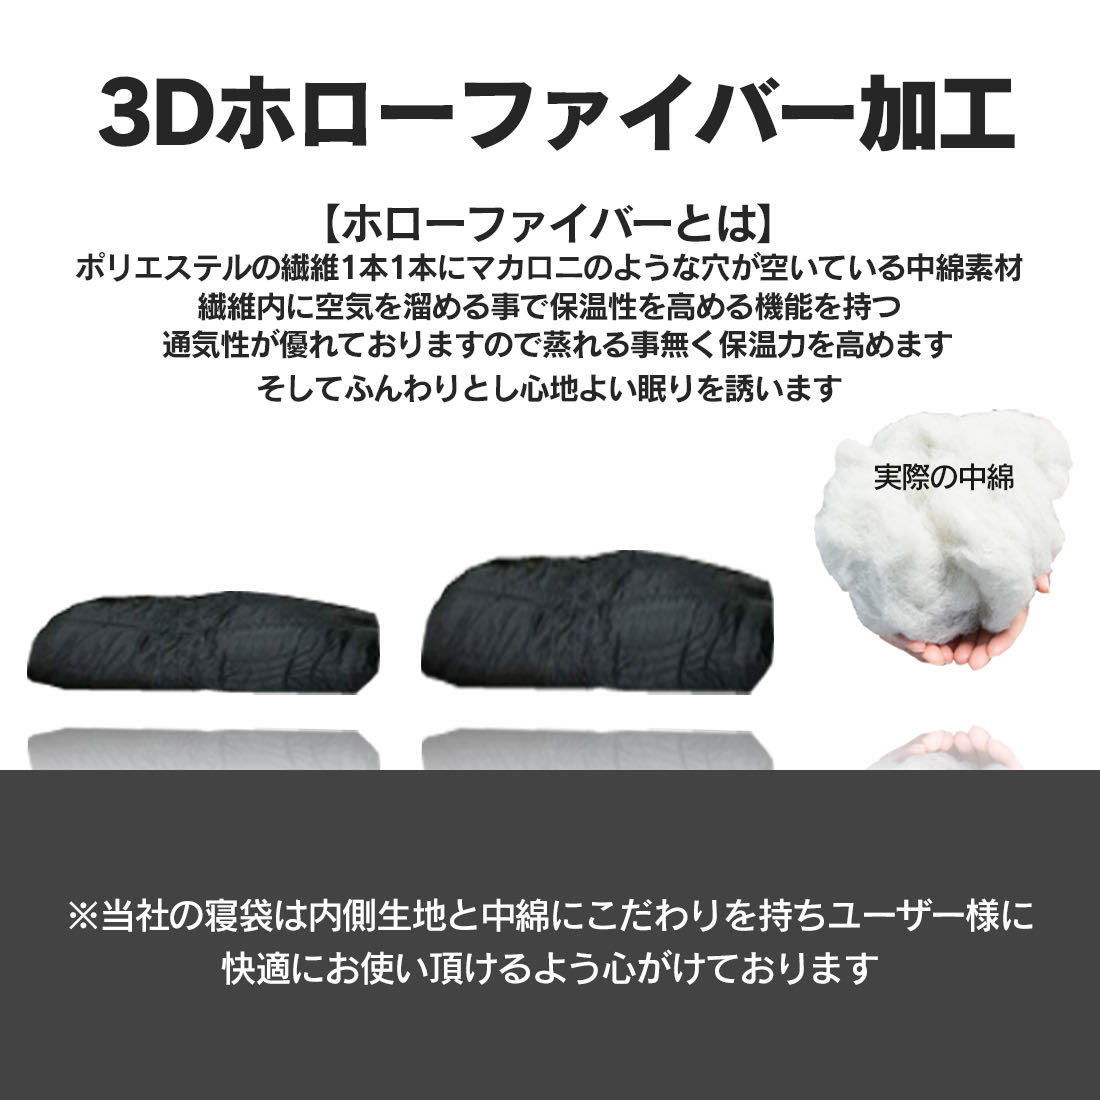 新品未使用寝袋ブラック-7℃封筒型シュラフスリーピングバッグ黒キャンプグランピング用寝具_画像6